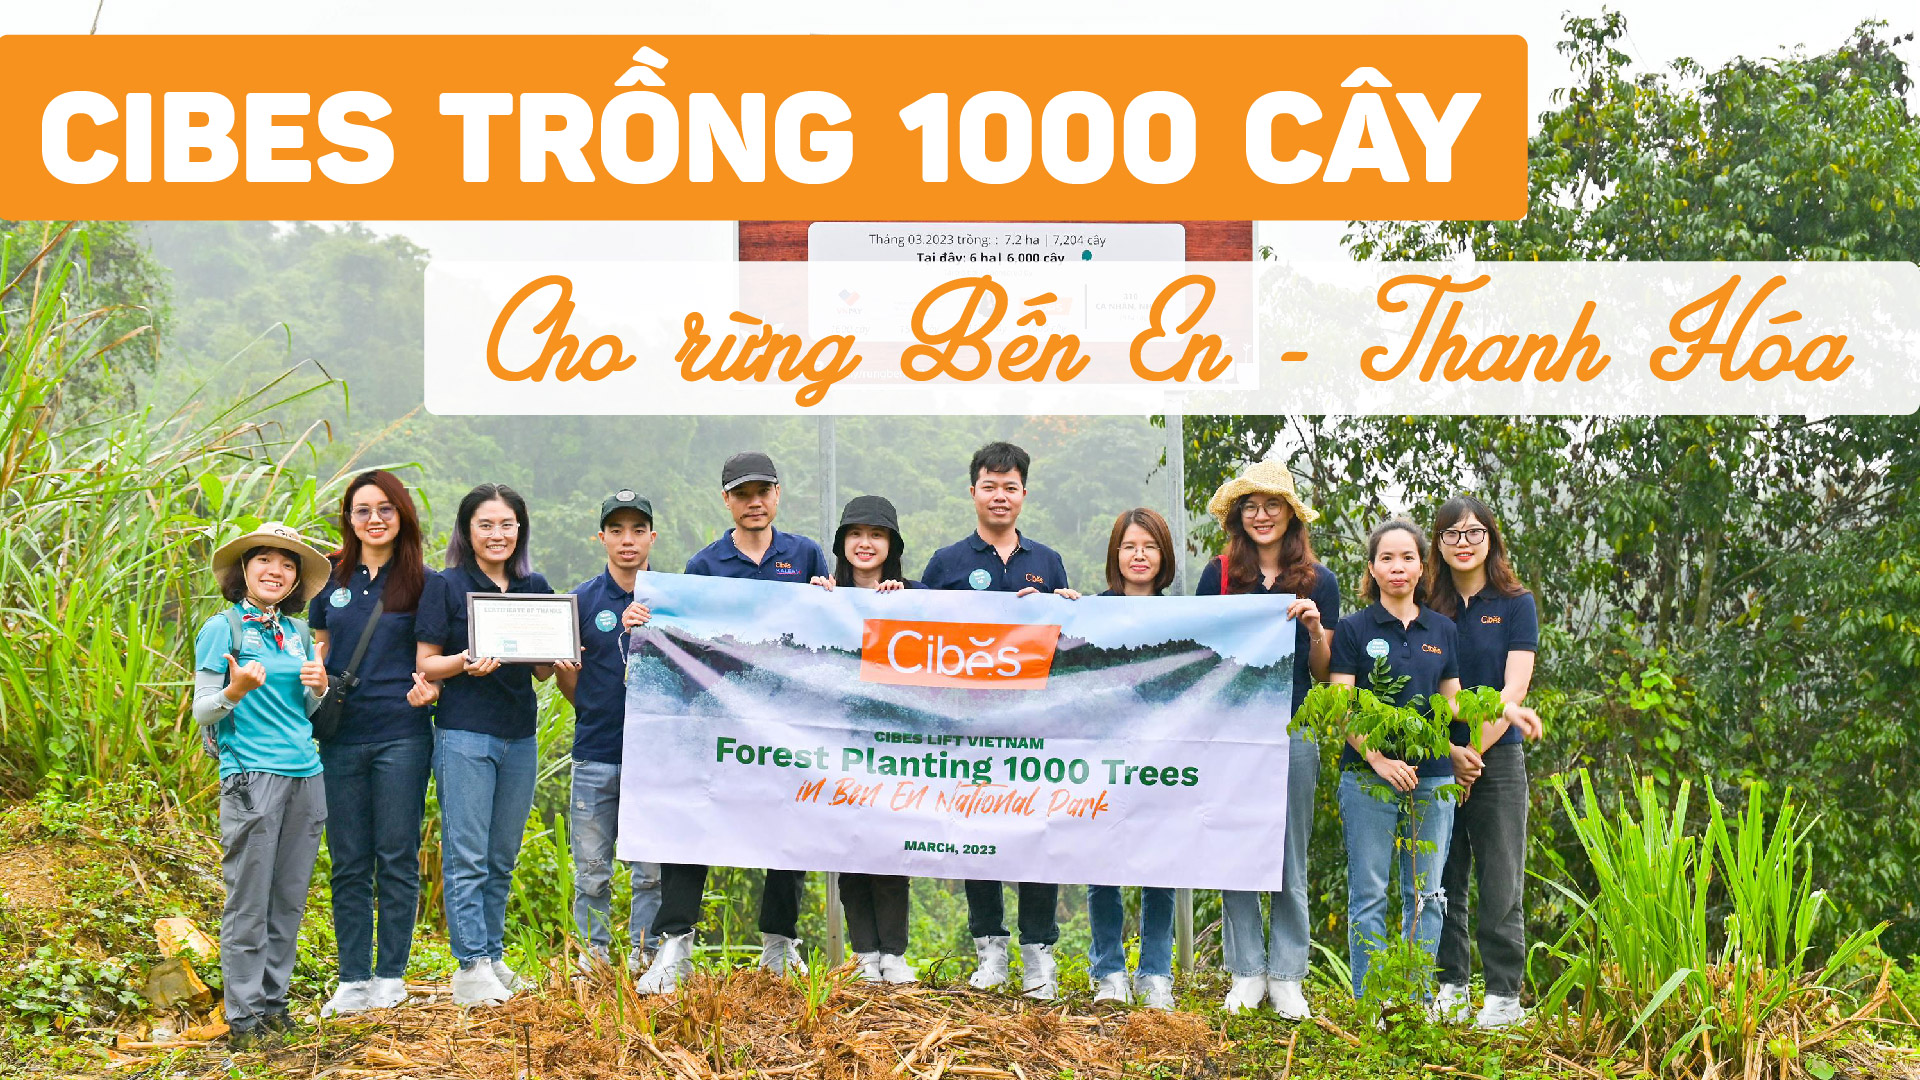 Gieo trồng tương lai xanh & Ươm mầm giá trị bền vững - Cibes Lift Việt Nam góp 1000 cây cho vườn quốc gia Bến En